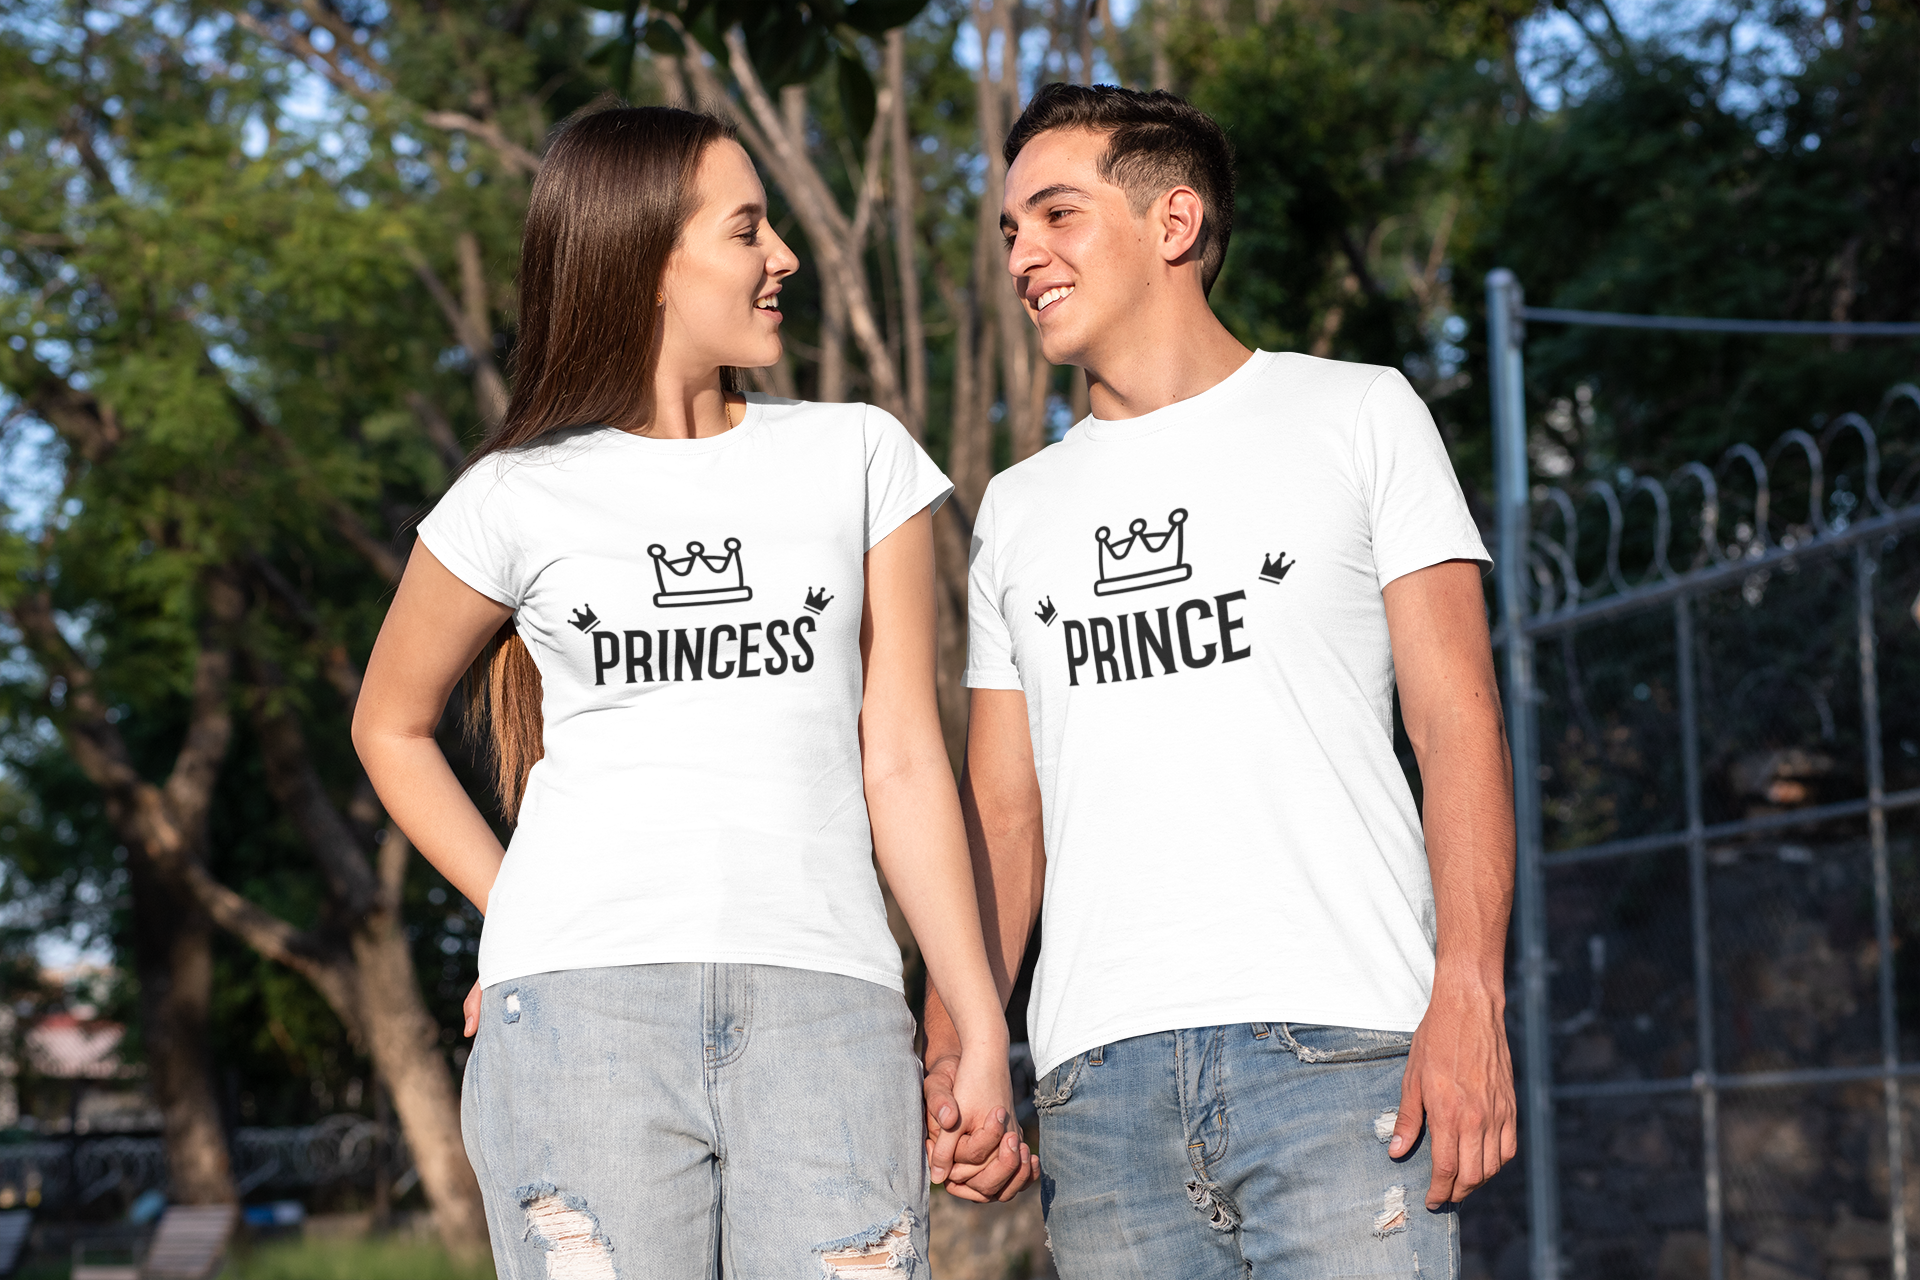 Prince/Princess